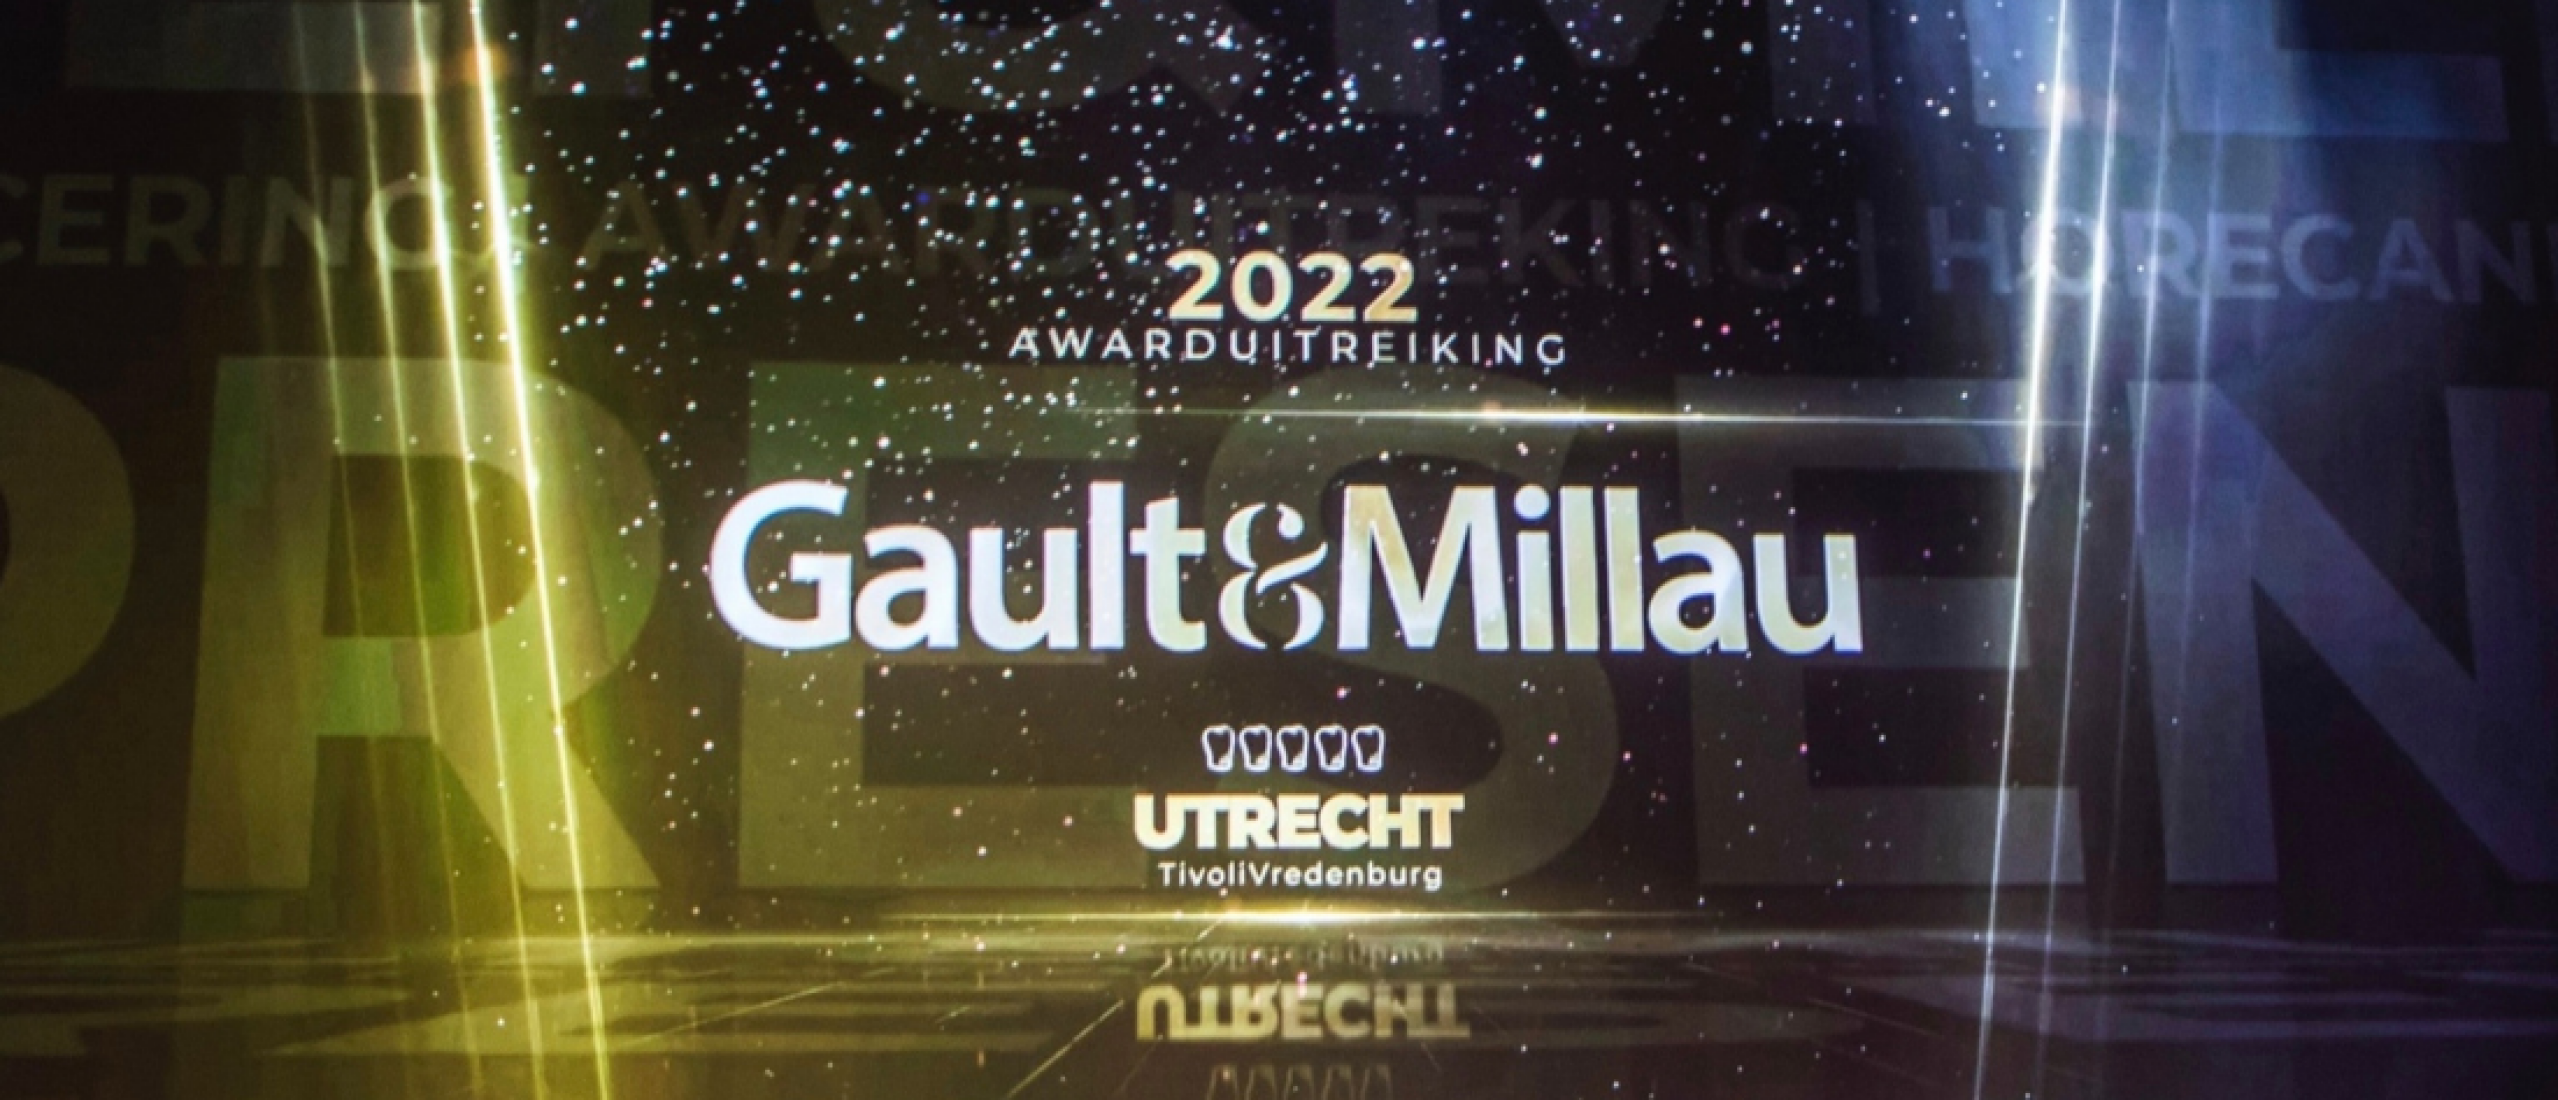 Update Gault&Millau: 18 nieuwkomers.